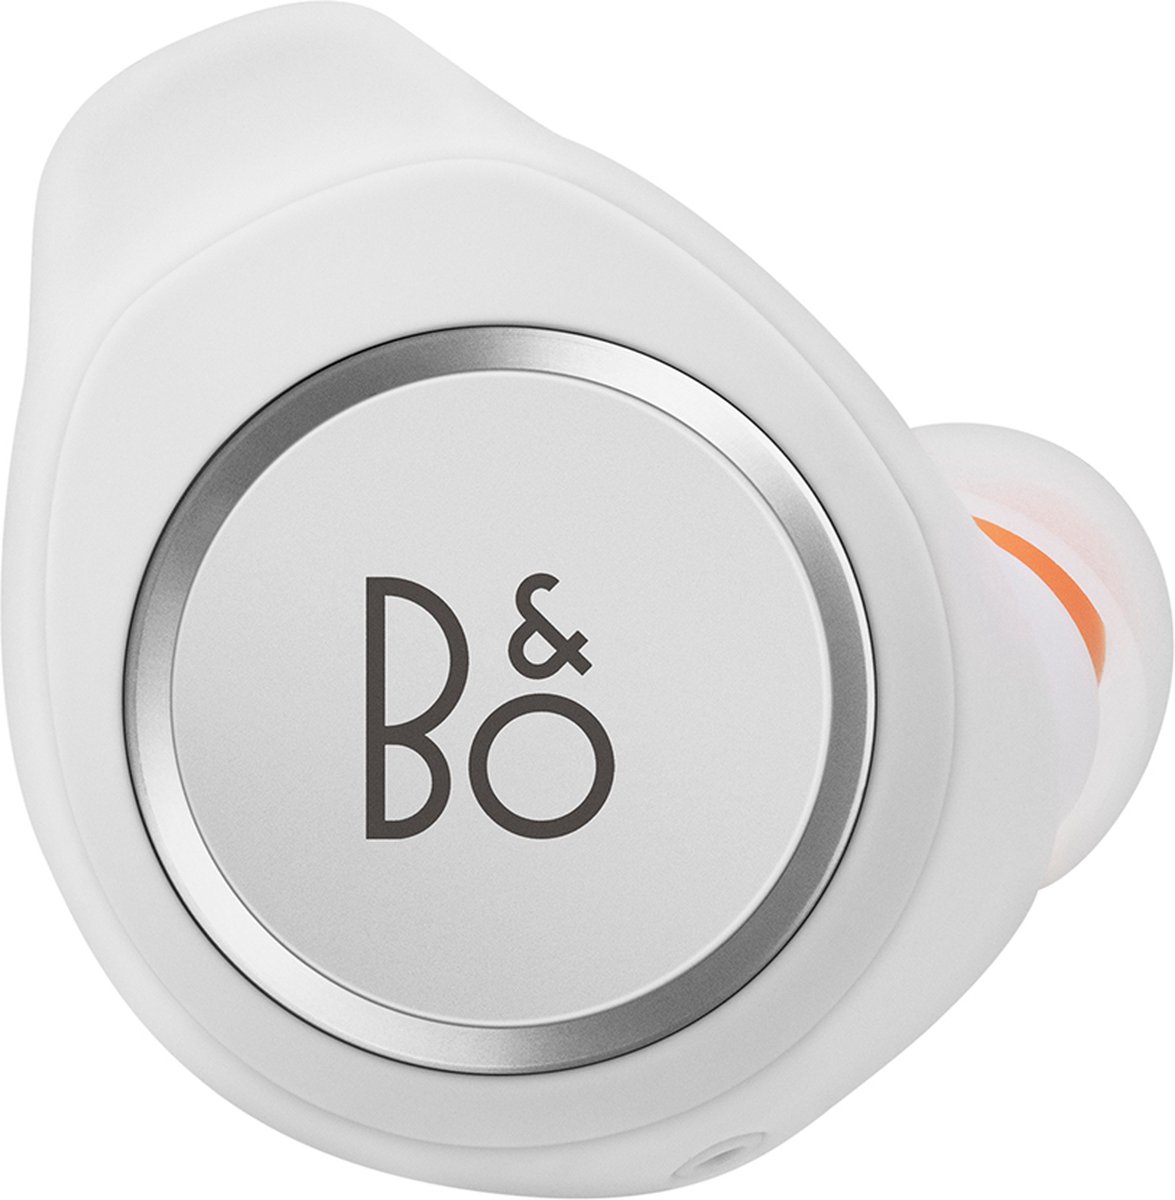 Bang & Olufsen Beoplay E8 Motion 2.0 Truly Wireless Earphones - White - draadloze oordopjes